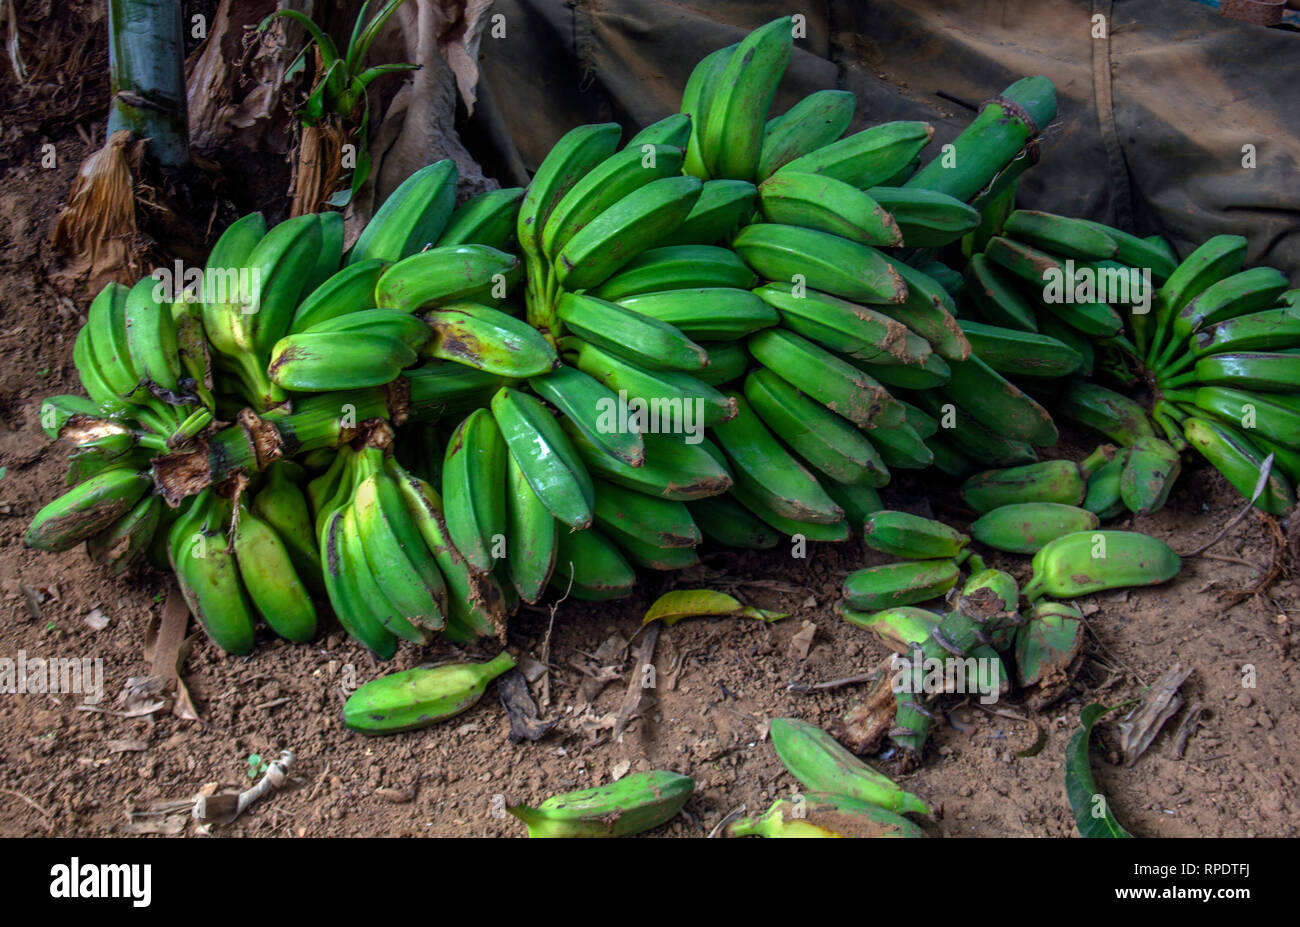 Racimo or bunch of banana Stock Photo